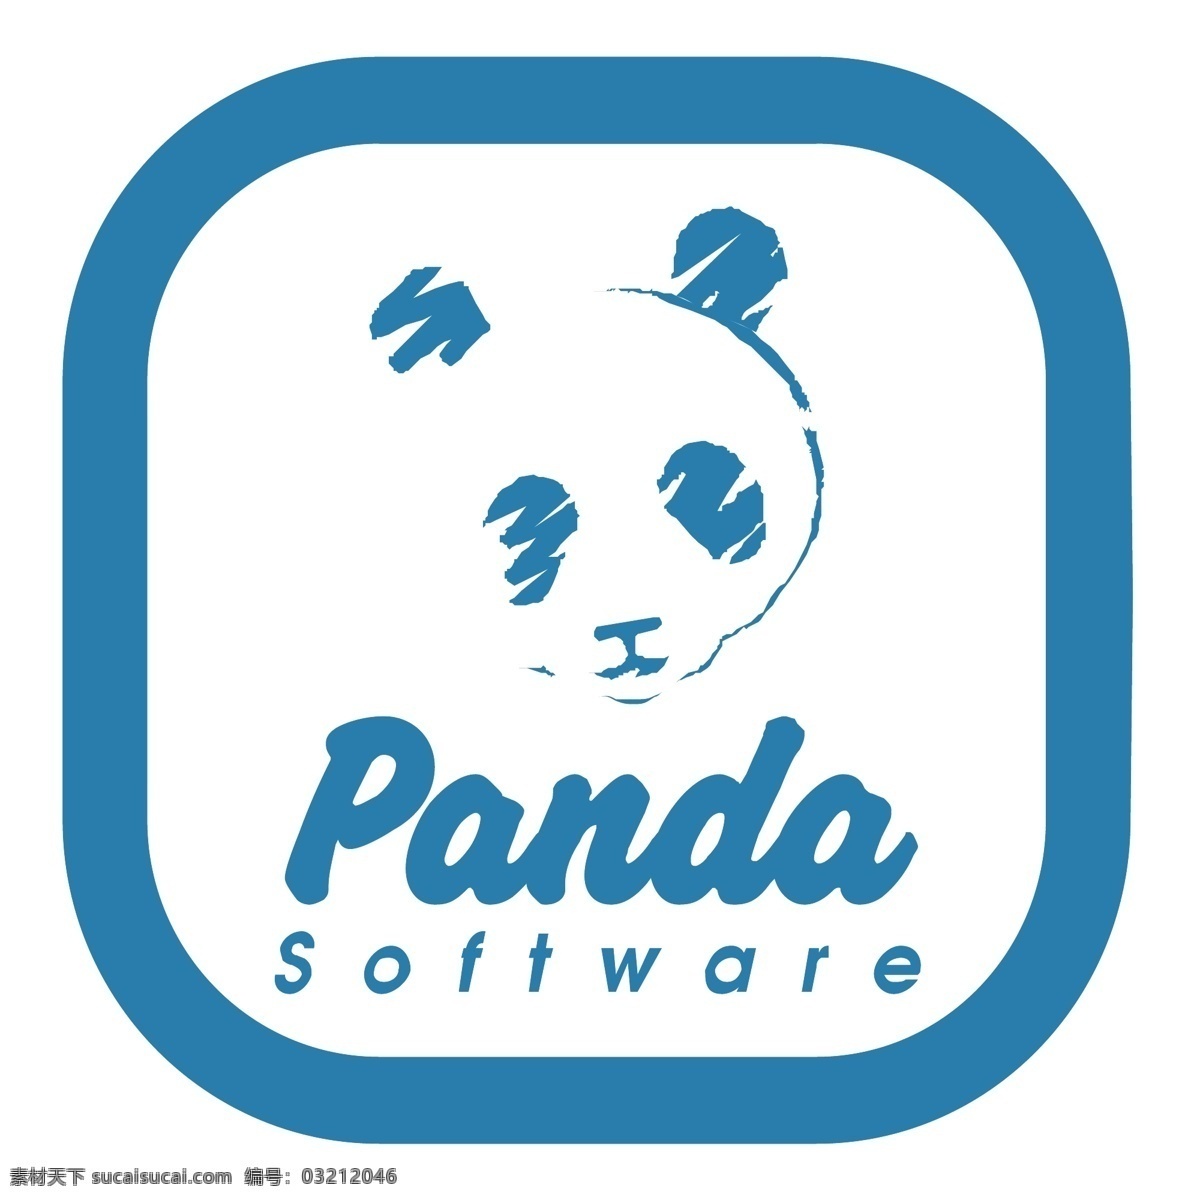 熊猫 杀毒软件 免费 杀毒 软件下载 标志 标识 psd源文件 logo设计